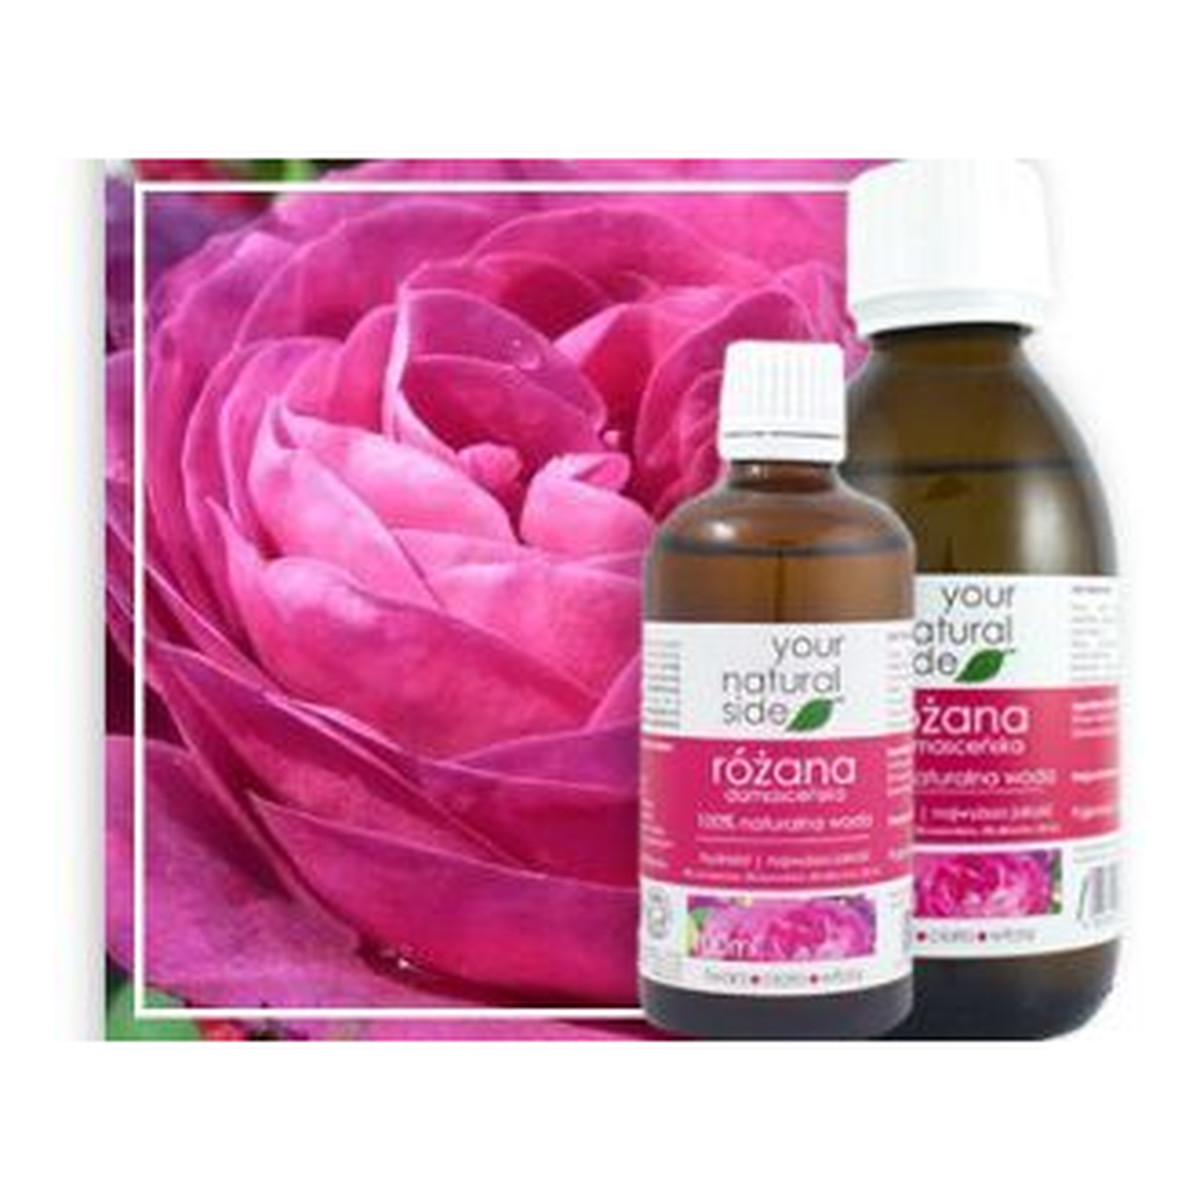 Your Natural Side Woda z Kwiatów Róży Damasceńskiej Organic 100ml